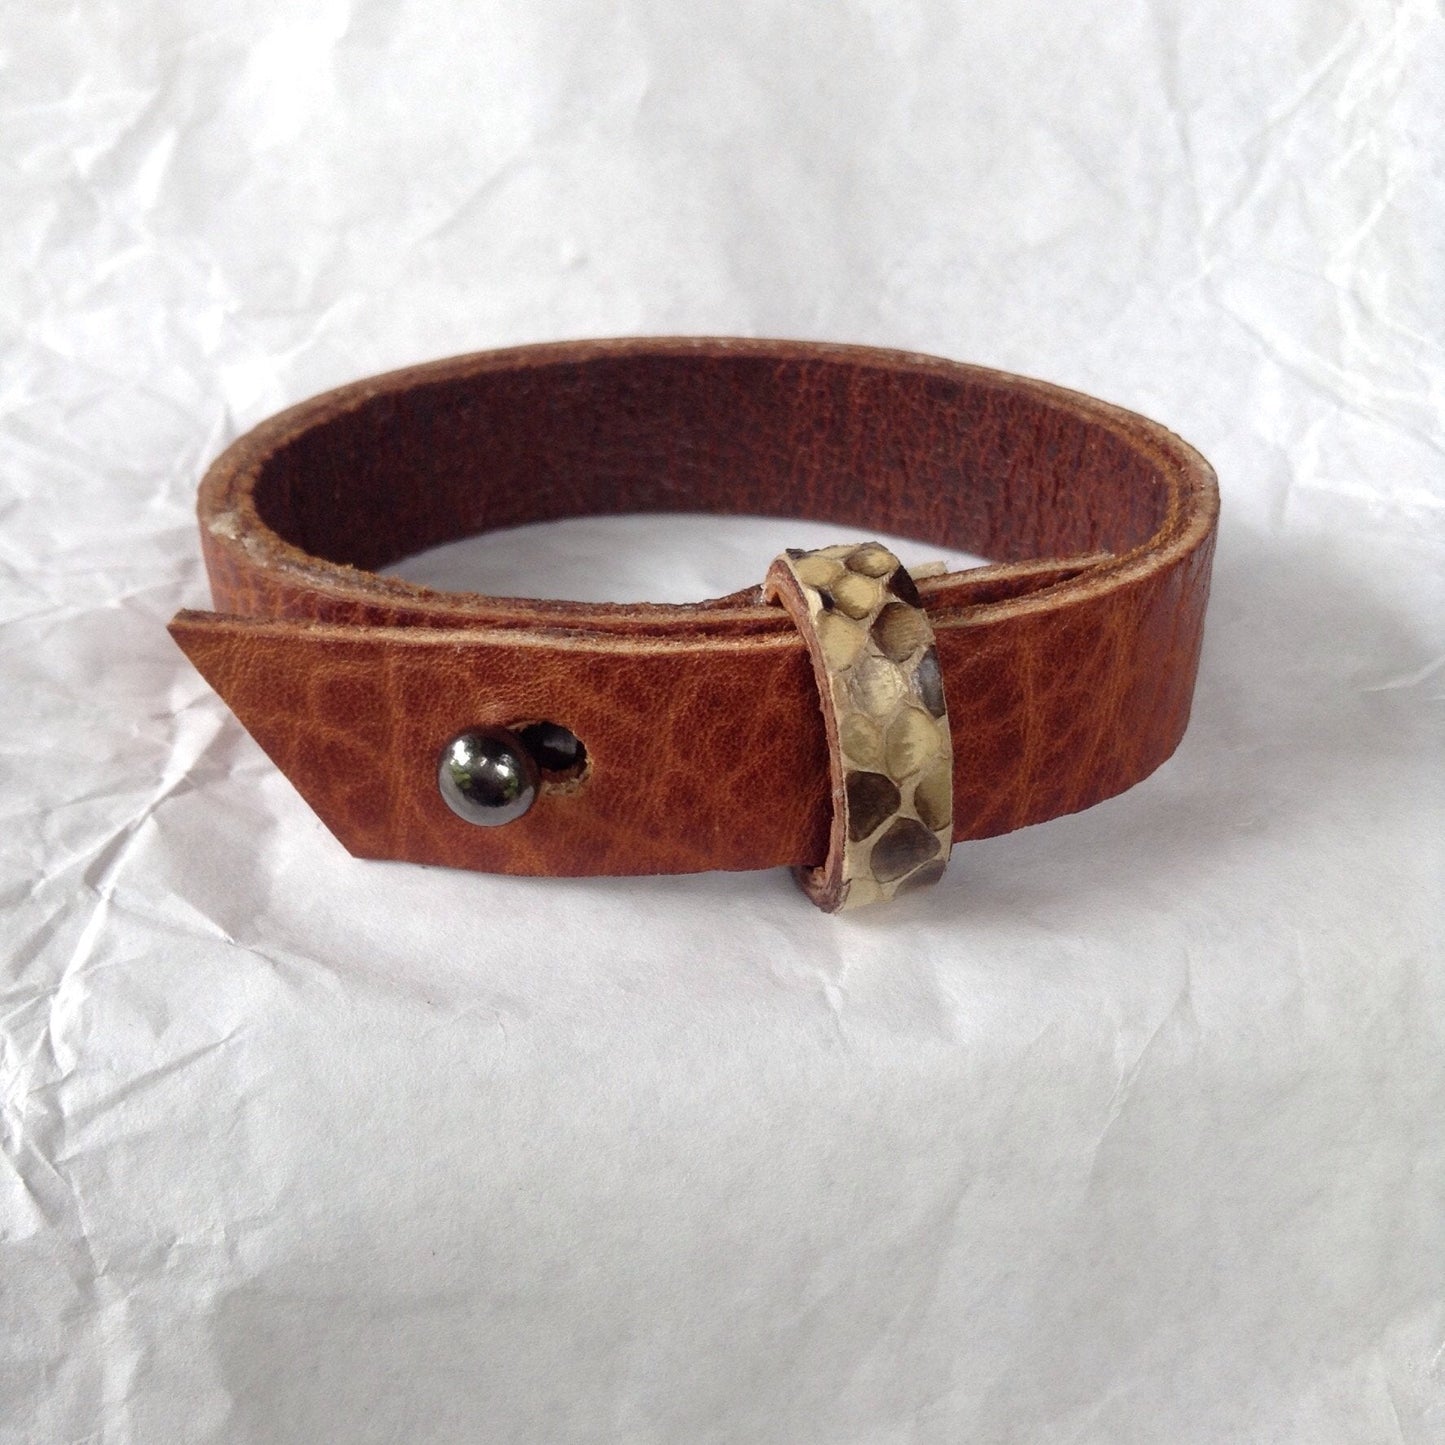 Python strap, Belt cuff style oiled buckskin lined leather bracelet.